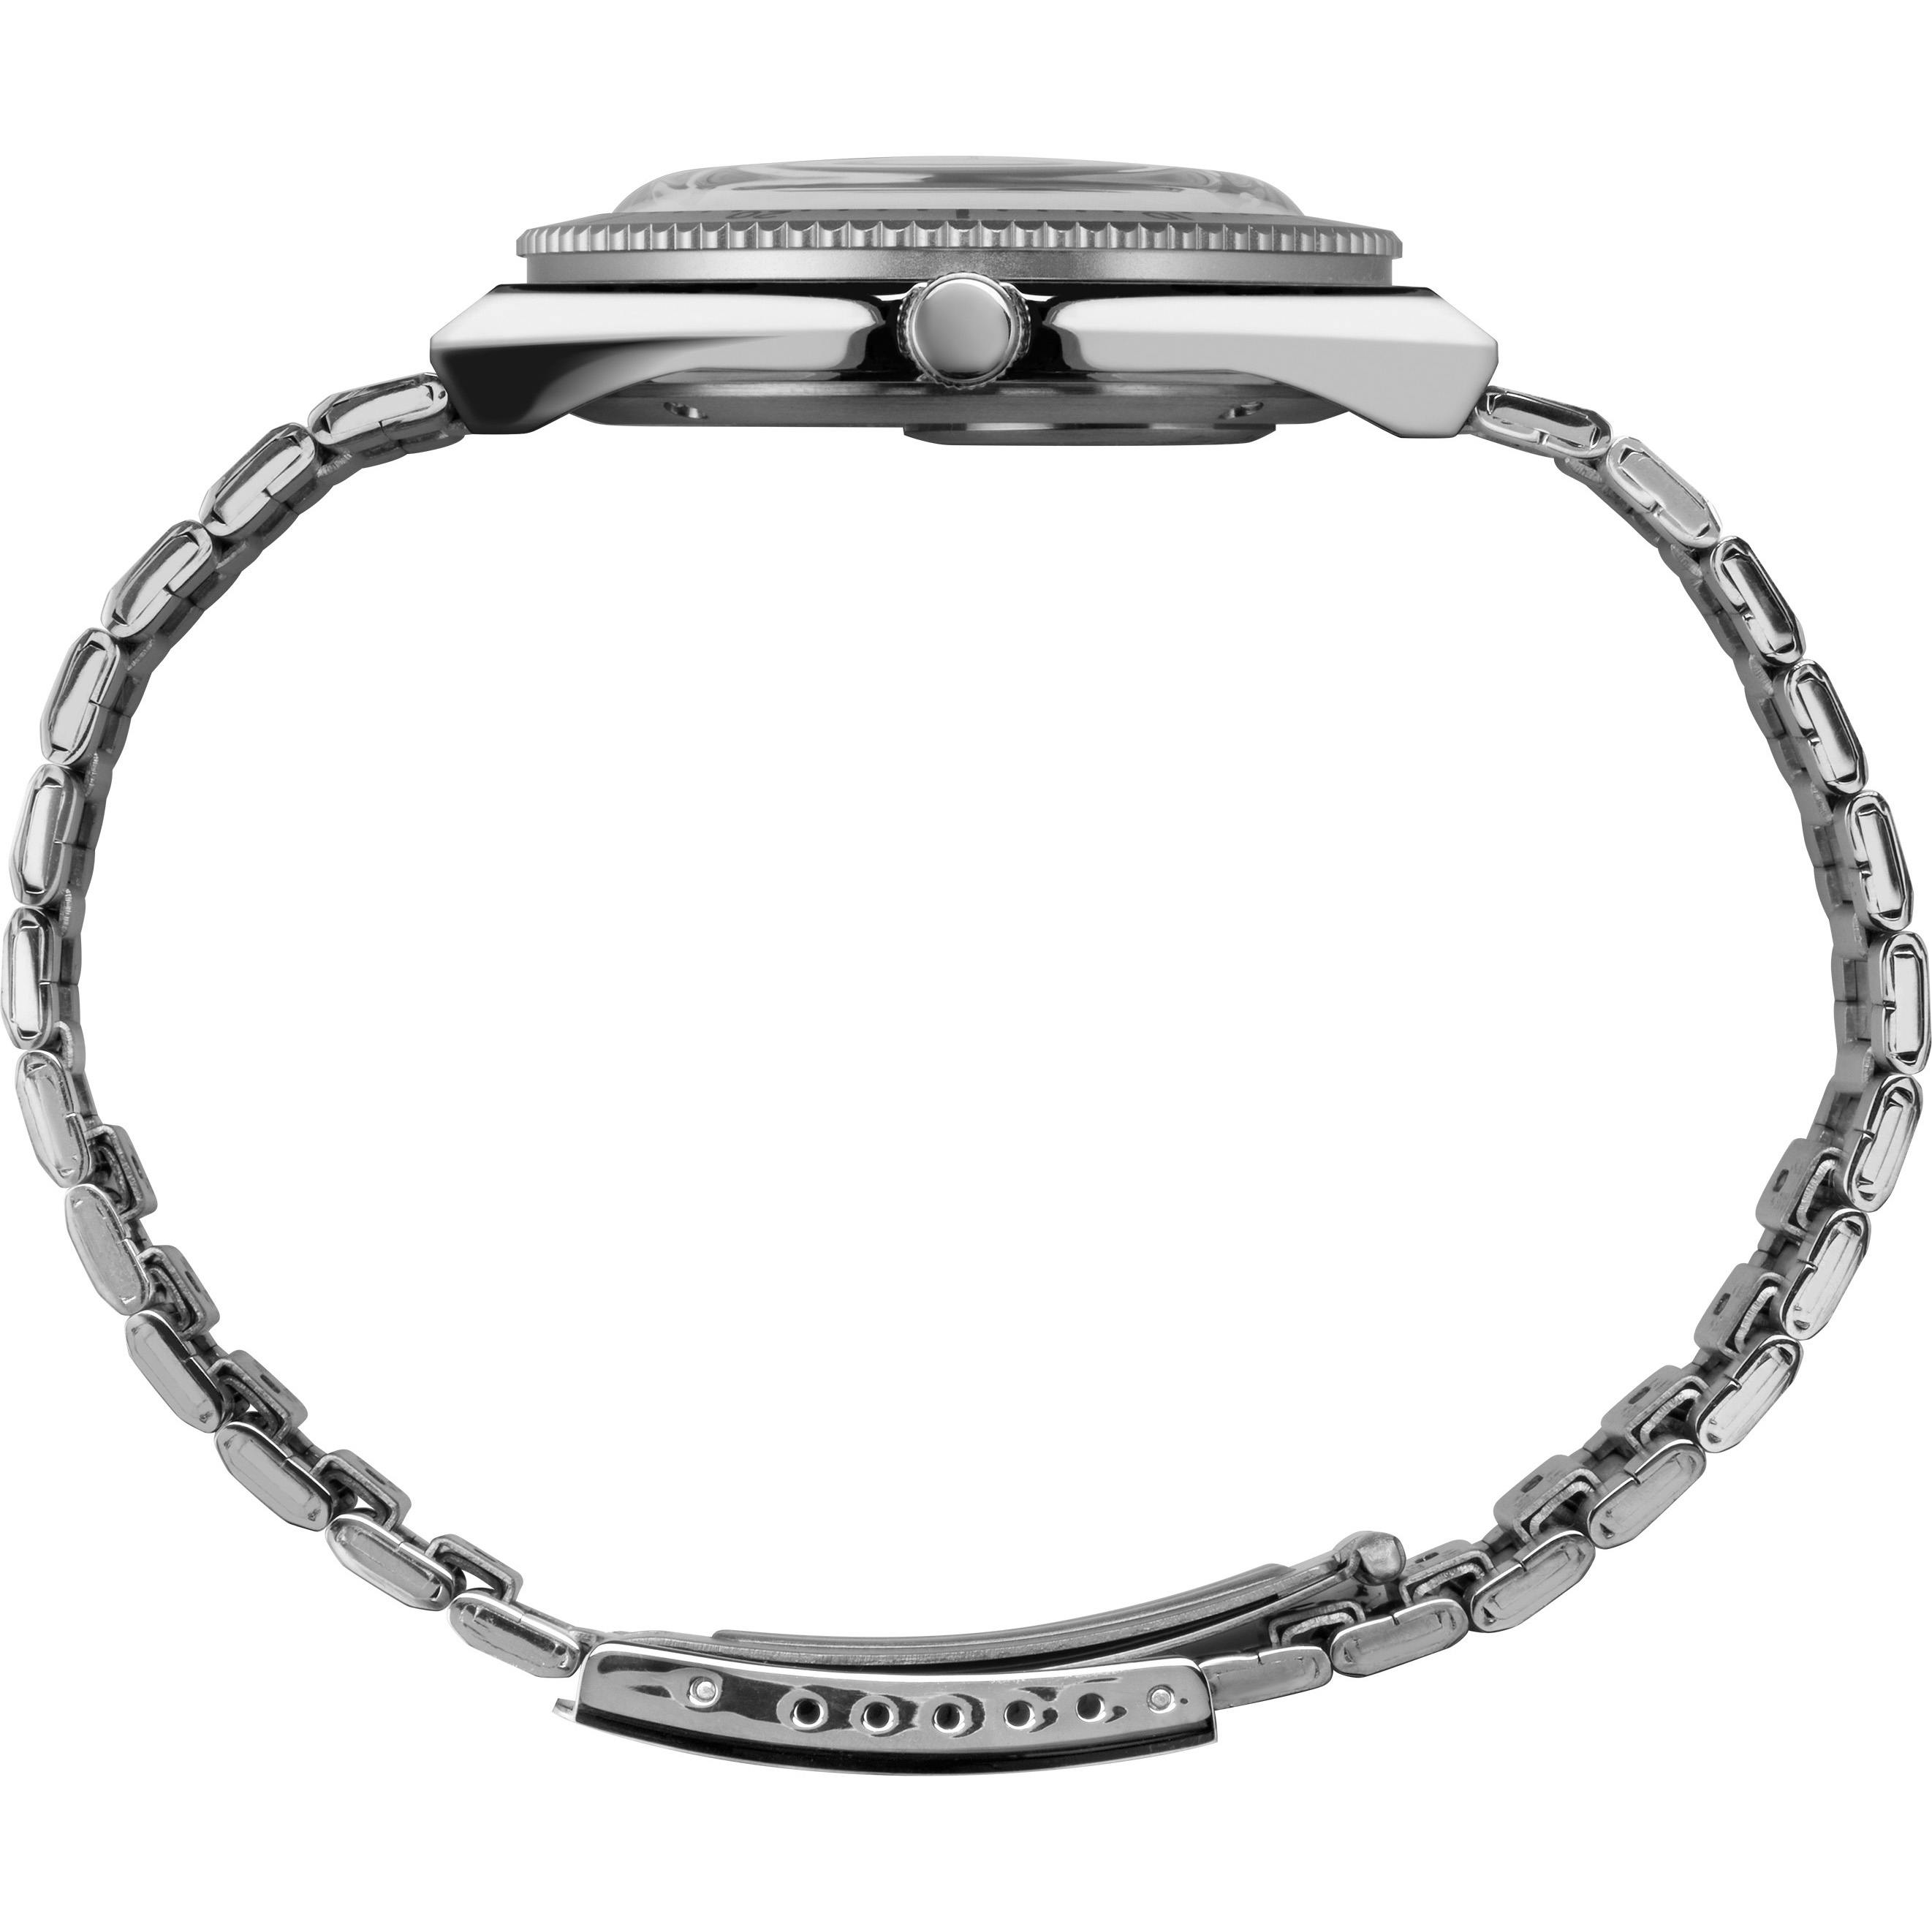 Timex Todd Snyder x Timex Q Bracelet Watch